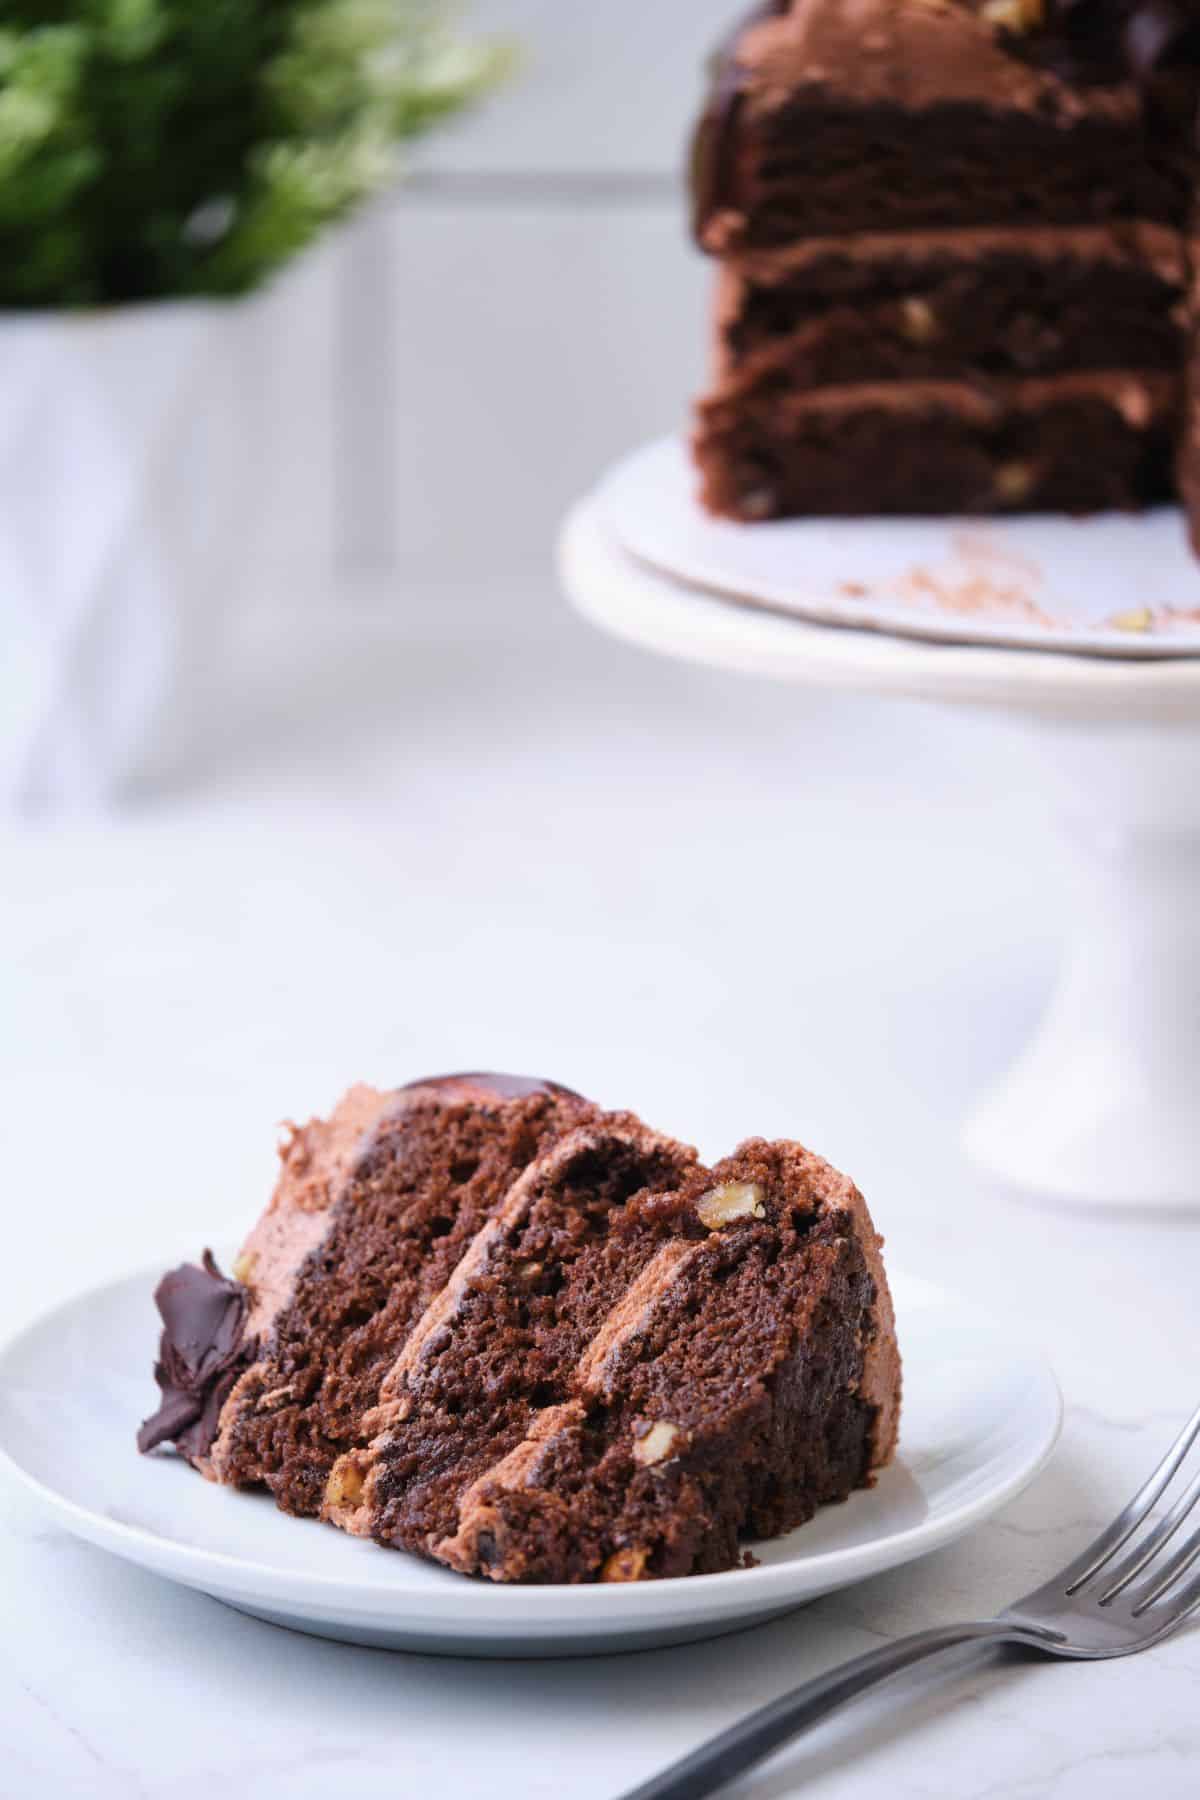 A slice of chocolate walnut cake on a plate.